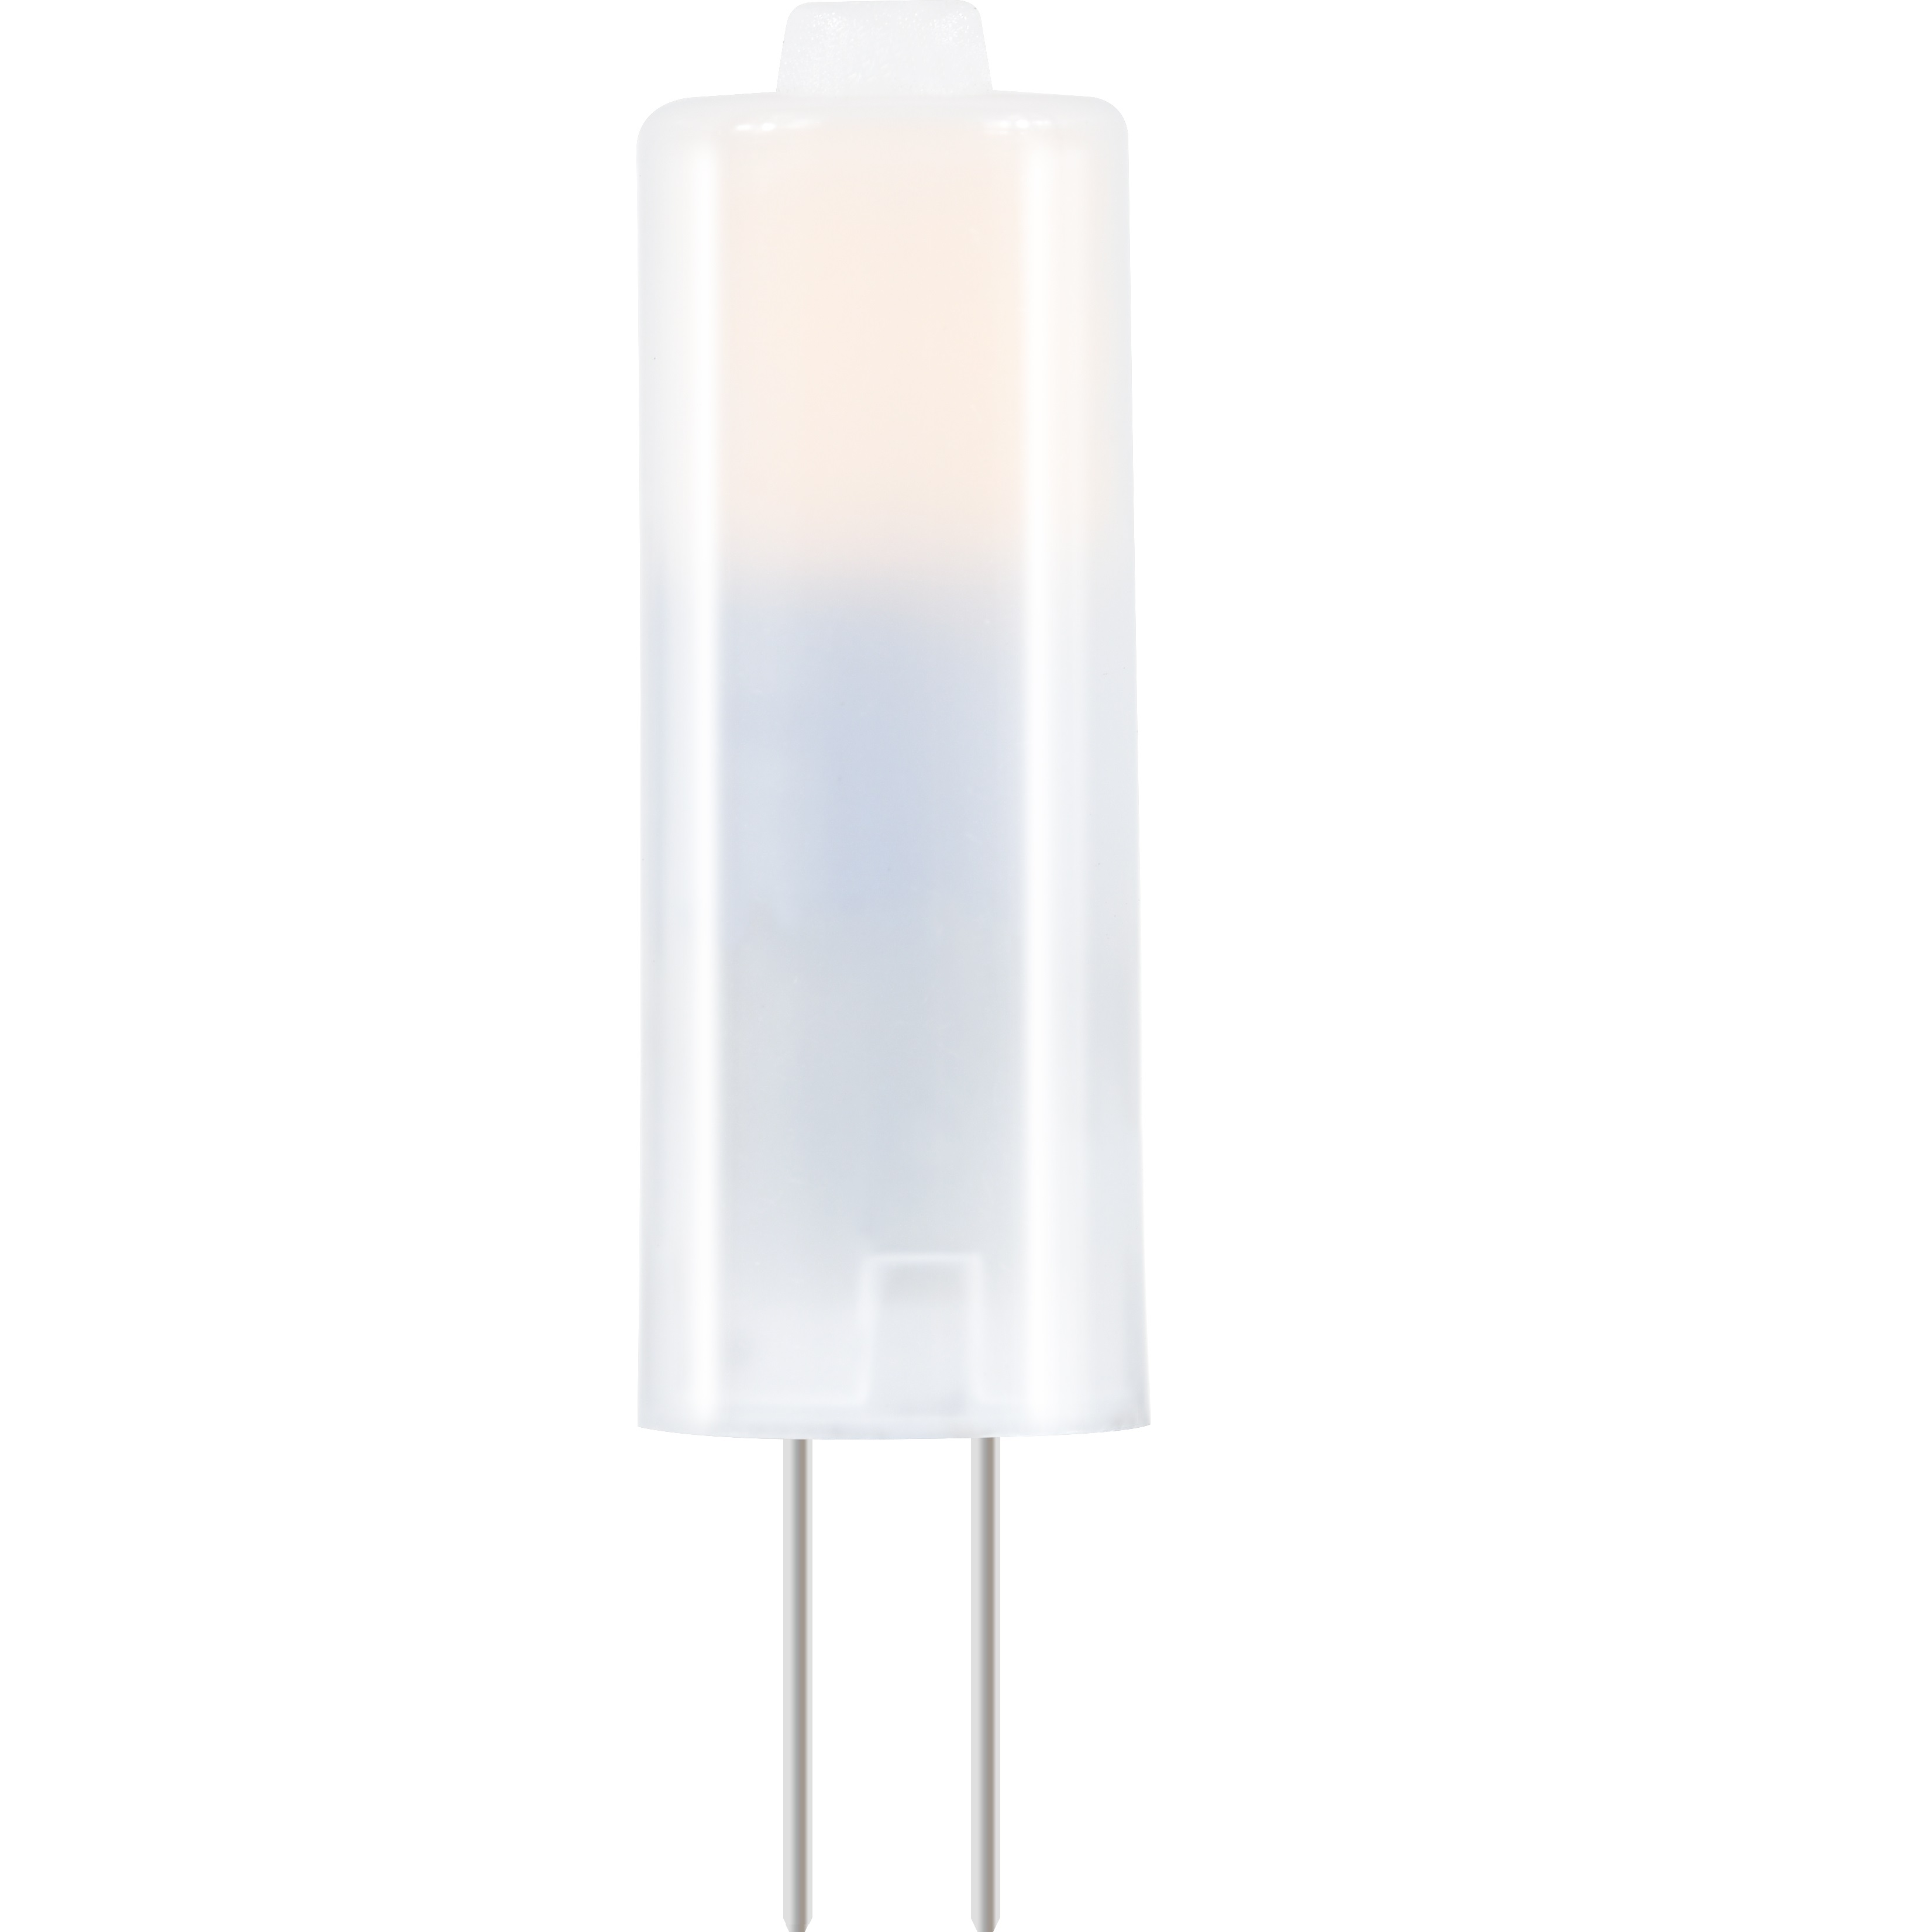 G4 new strobose-free 12D milky white bulb lamp